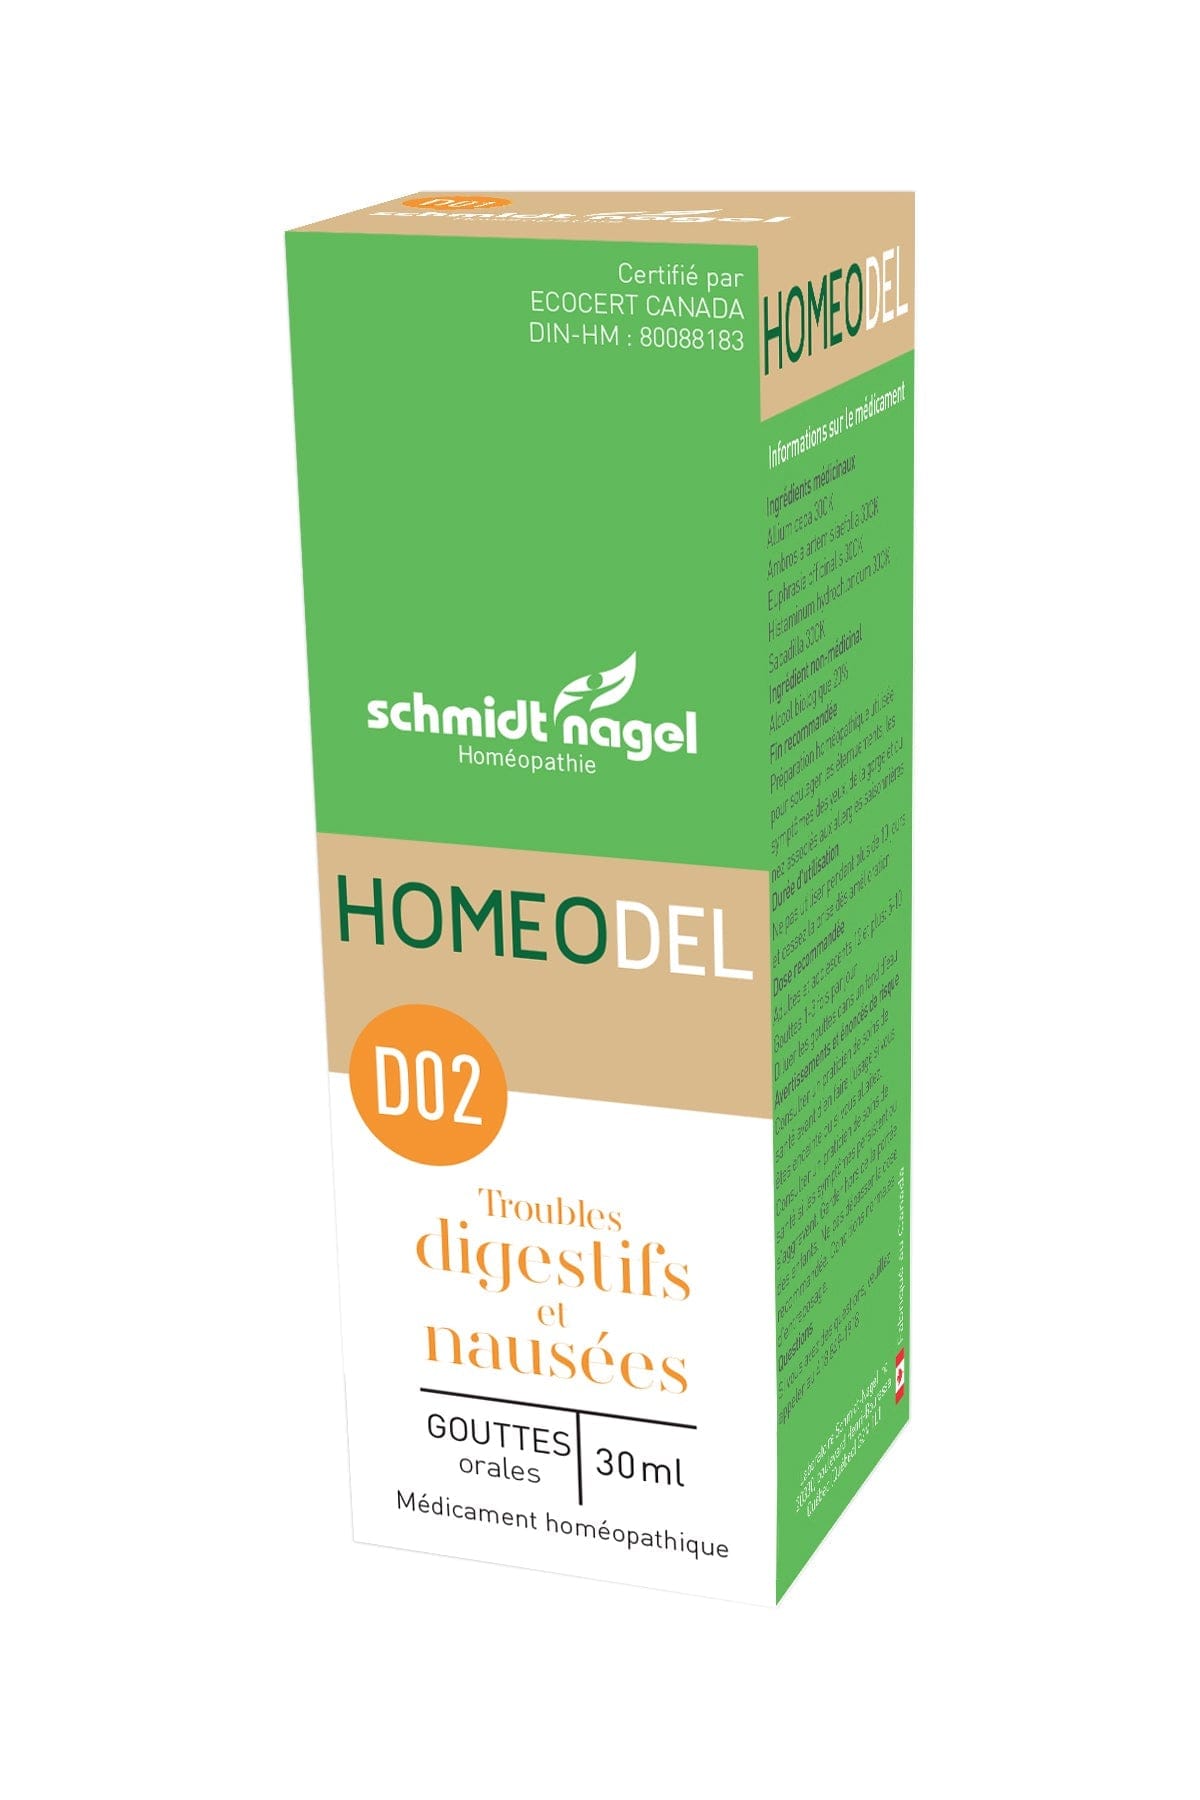 HOMEODEL Suppléments Homeo D02 (trouble digestifs et nausées) 30ml
DATE DE PÉREMPTION : 31 AOÛT 2024